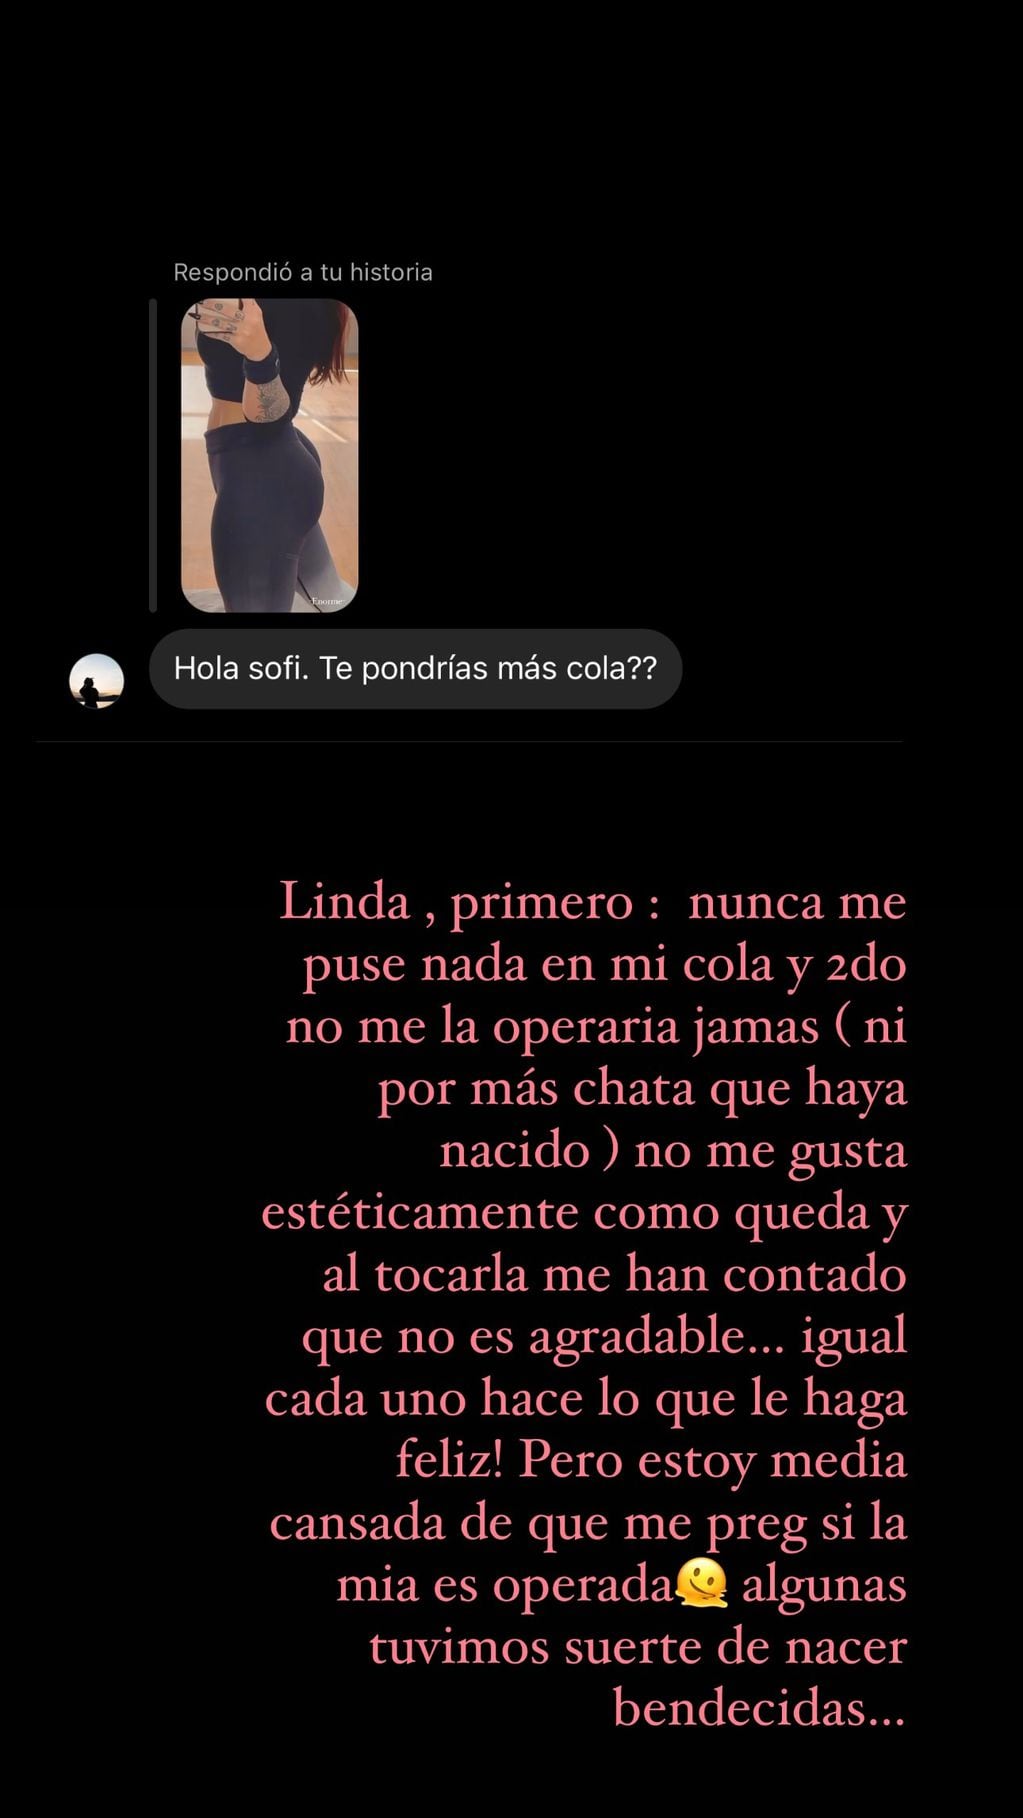 Sofía Clerici recibió una picante pregunta en Instagram y su respuesta fue contundente: “No me operaría jamás…”